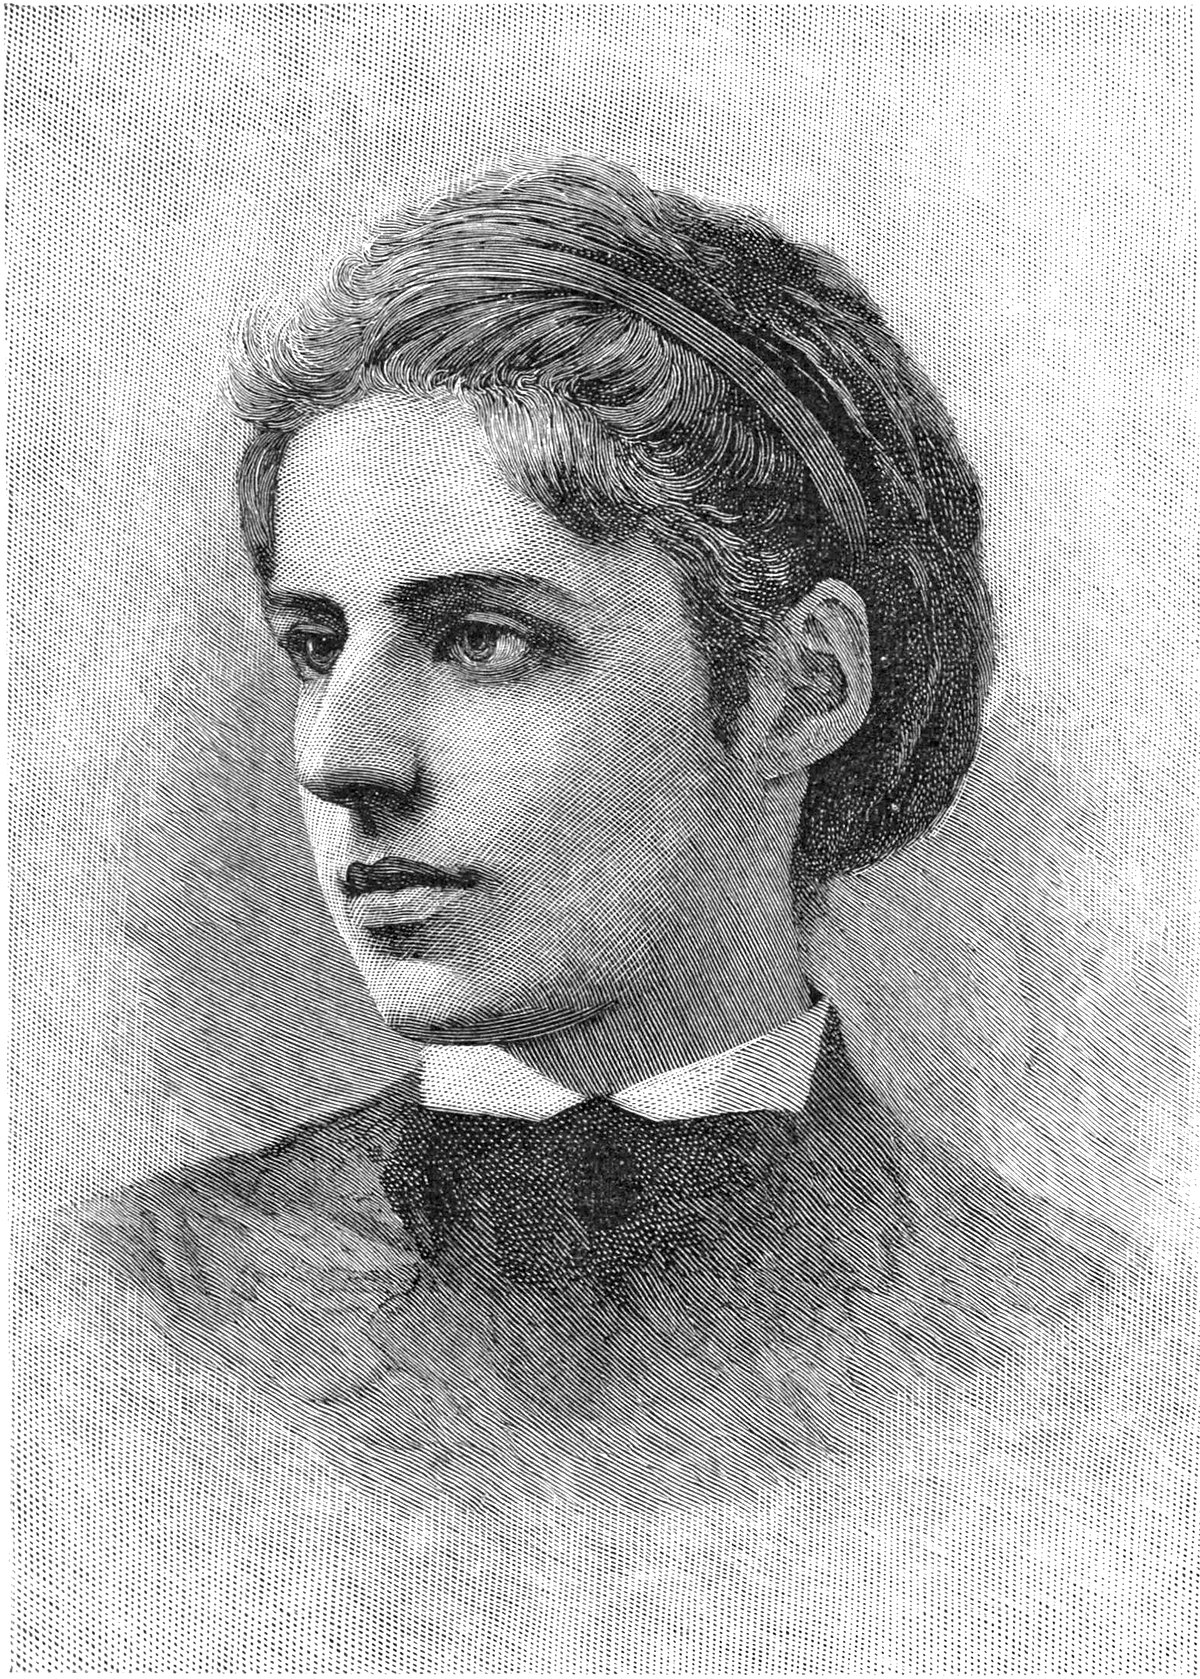 Emma Lazarus engraving